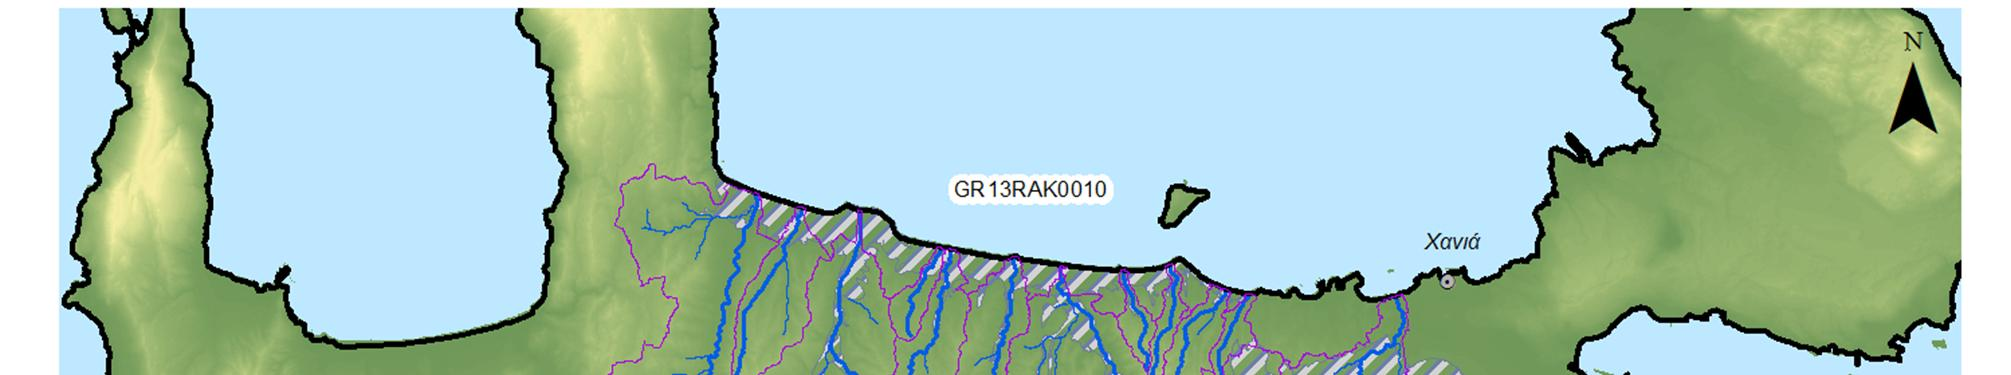 Σχήμα 4.6: Υδατορεύματα και λεκάνες απορροής της ΖΔΥΚΠ «Χαμηλή ζώνη λεκανών ρεμάτων Χανίων» GR13RAK0010 Πίνακας 4.